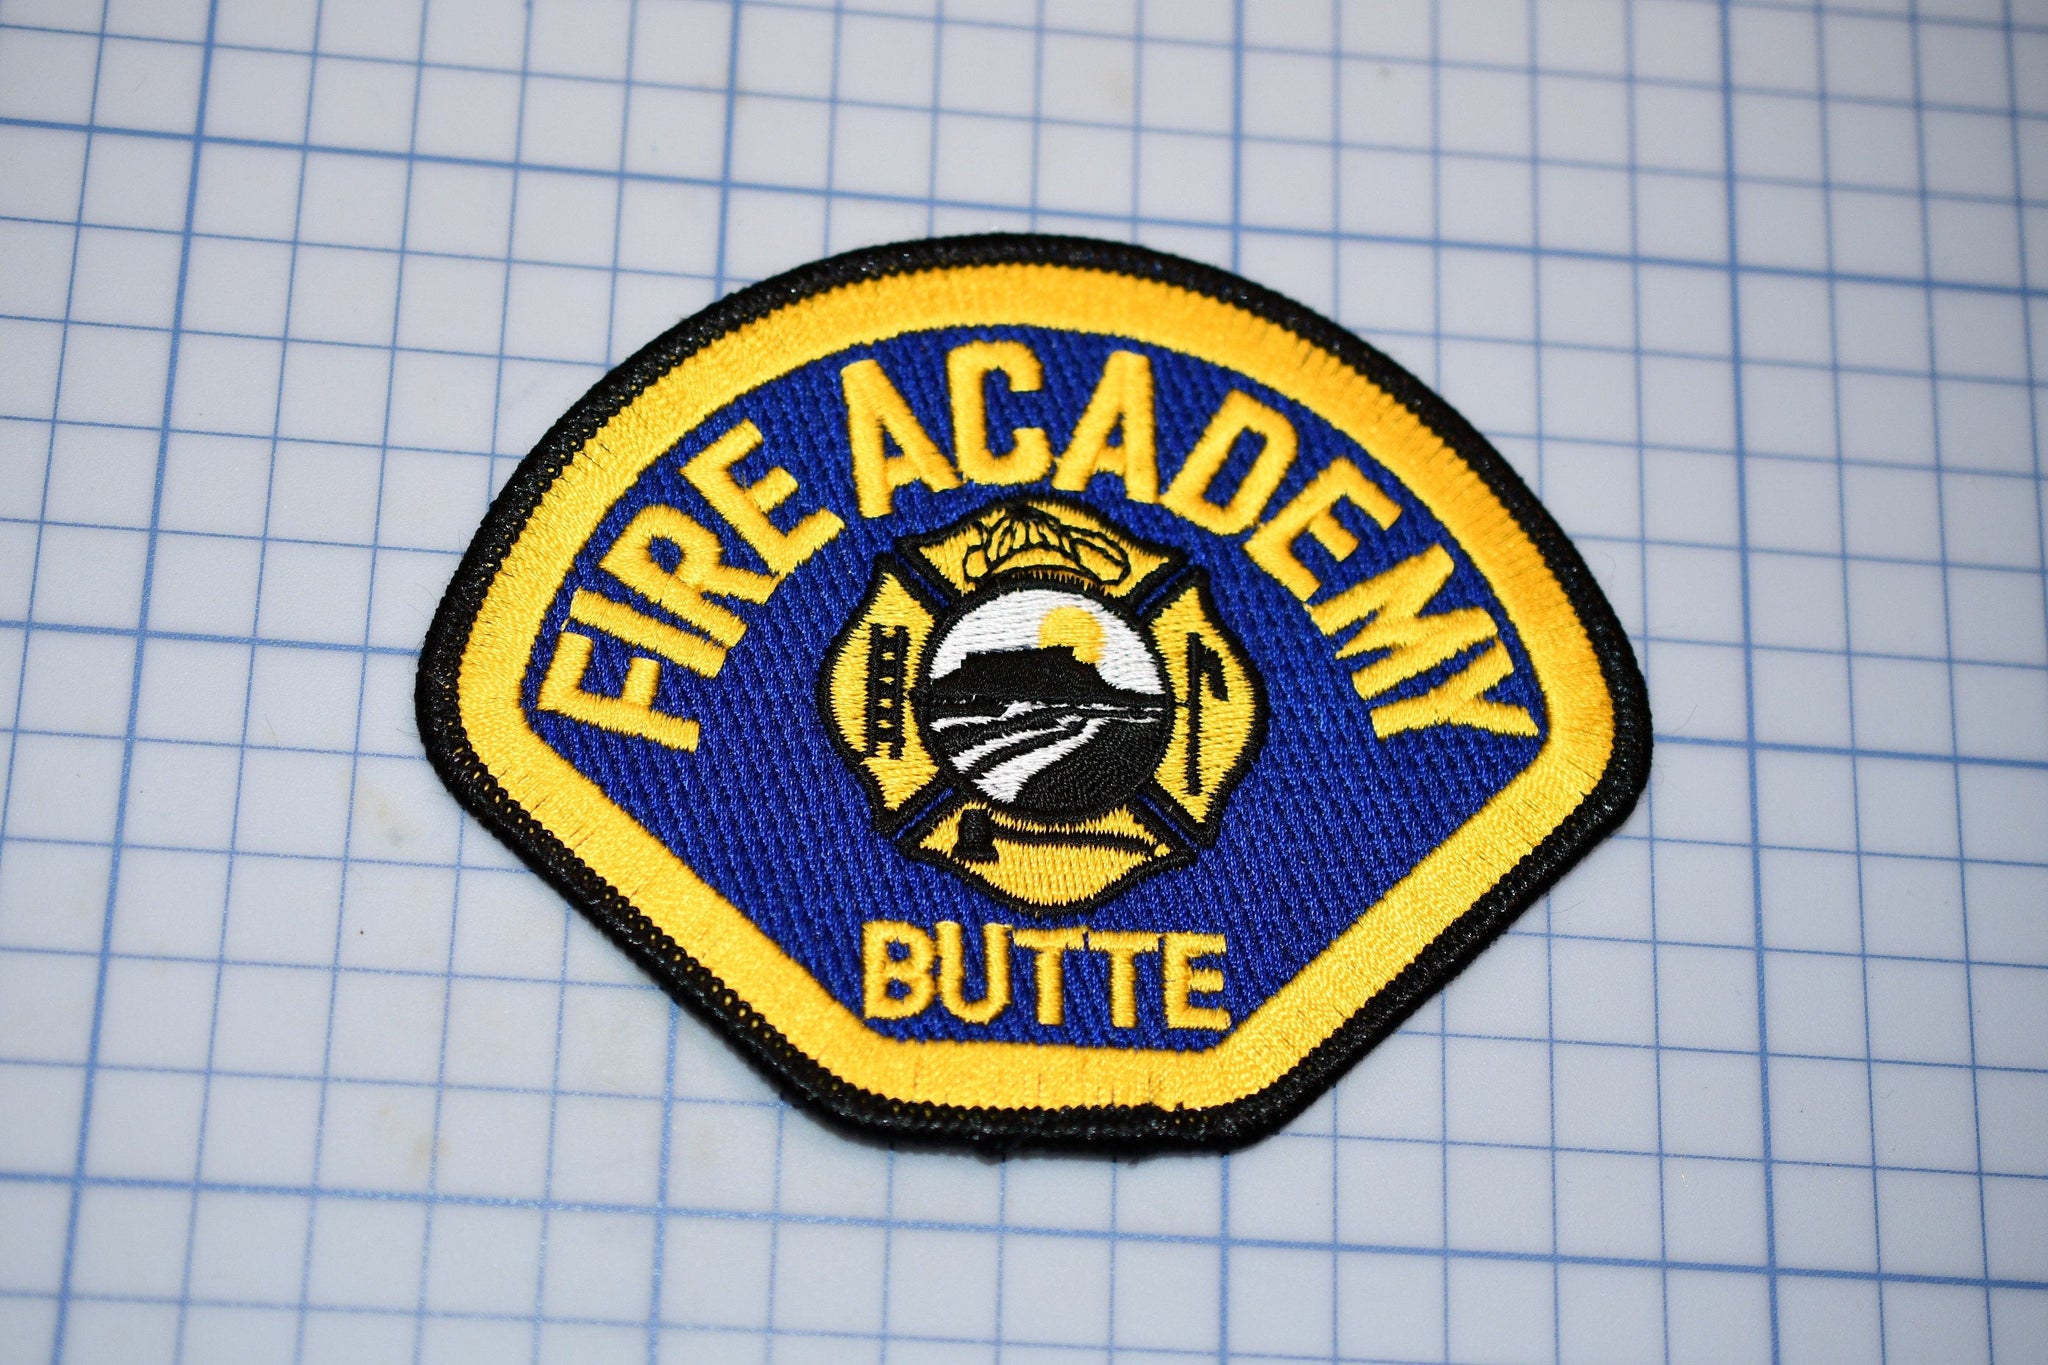 Butte California Fire Academy Patch (B25-335)